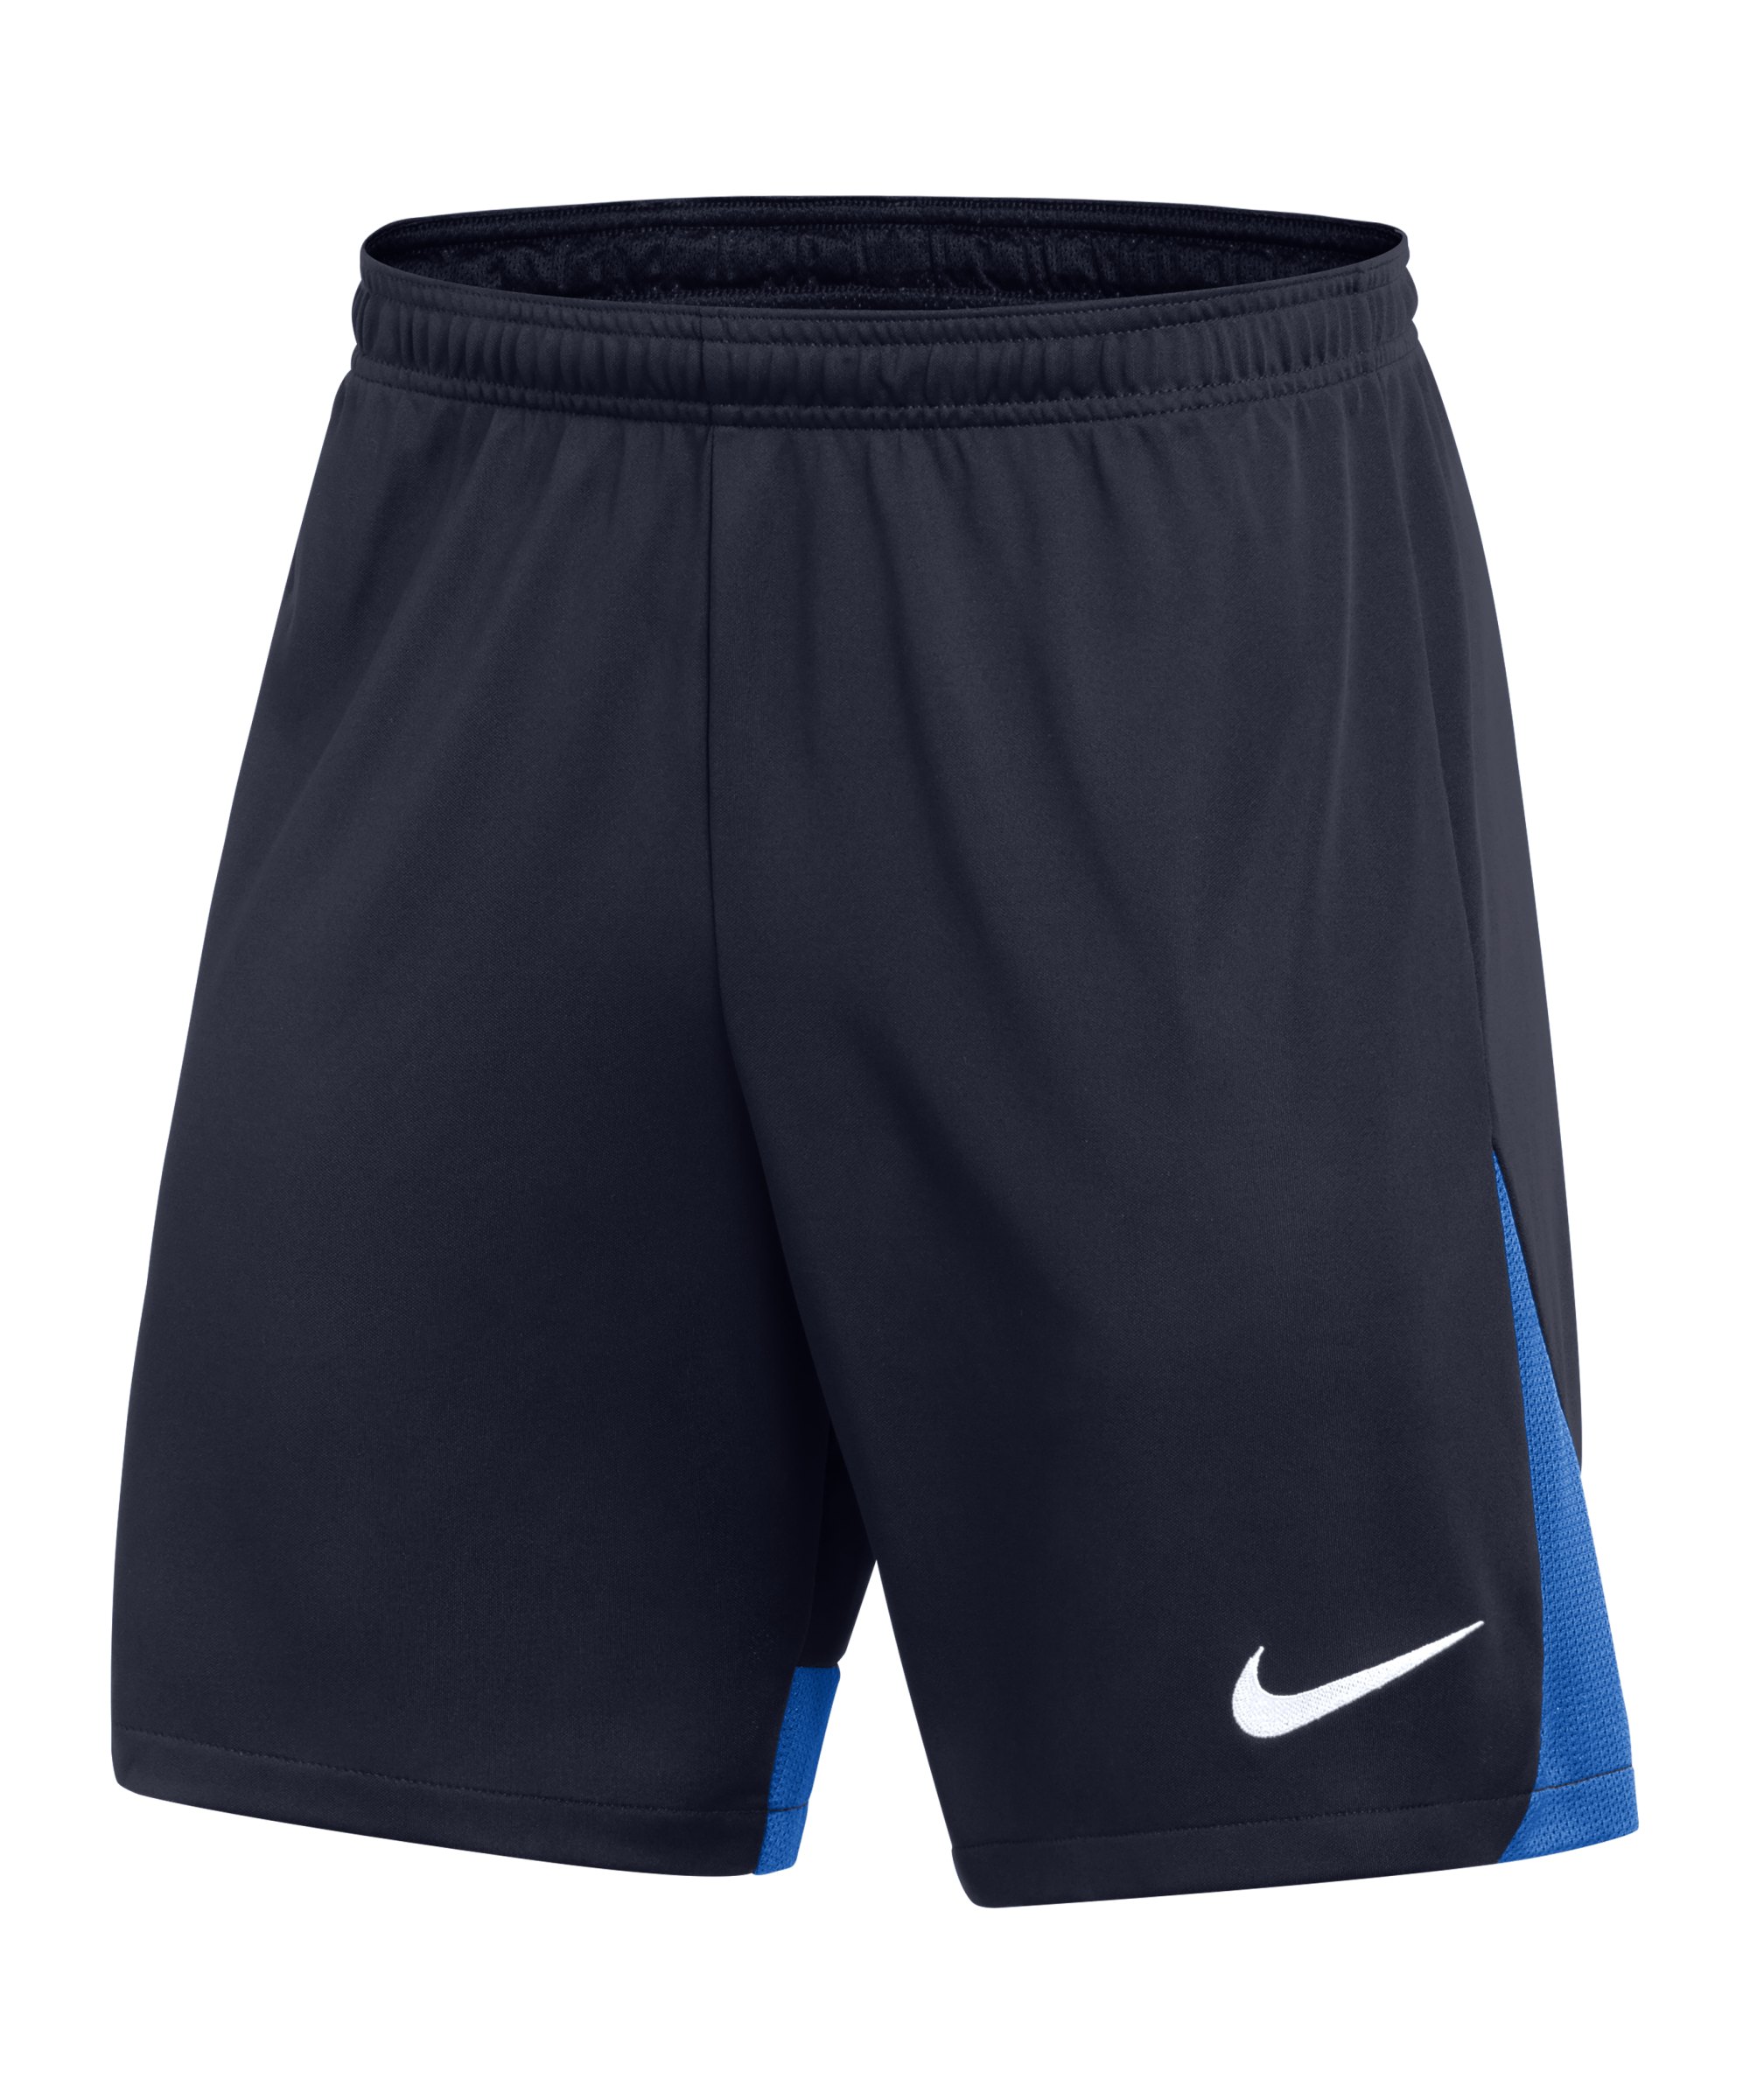 Nike Academy Pro Training Short Blau Weiss F451 - blau